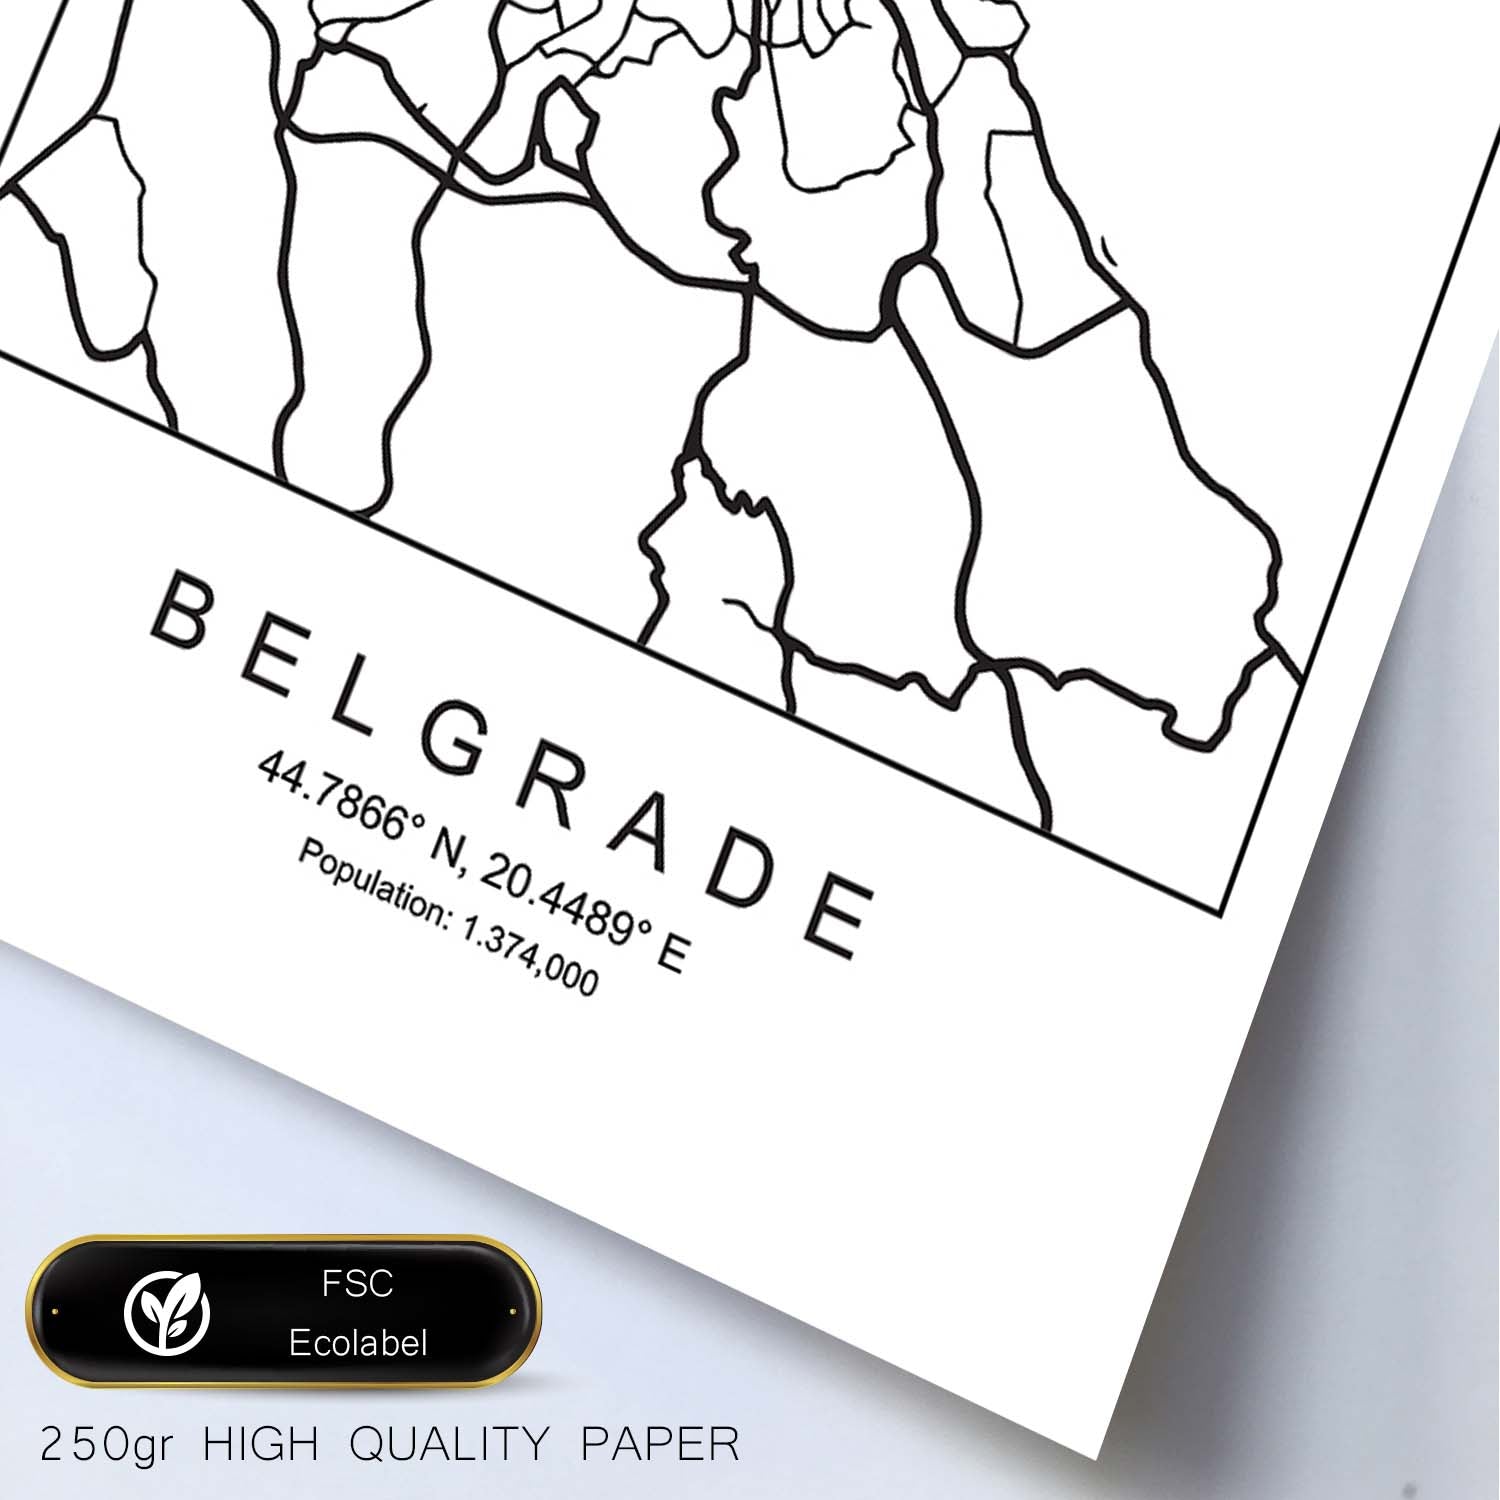 Lámina mapa de la ciudad Belgrade estilo nordico en blanco y negro.-Artwork-Nacnic-Nacnic Estudio SL